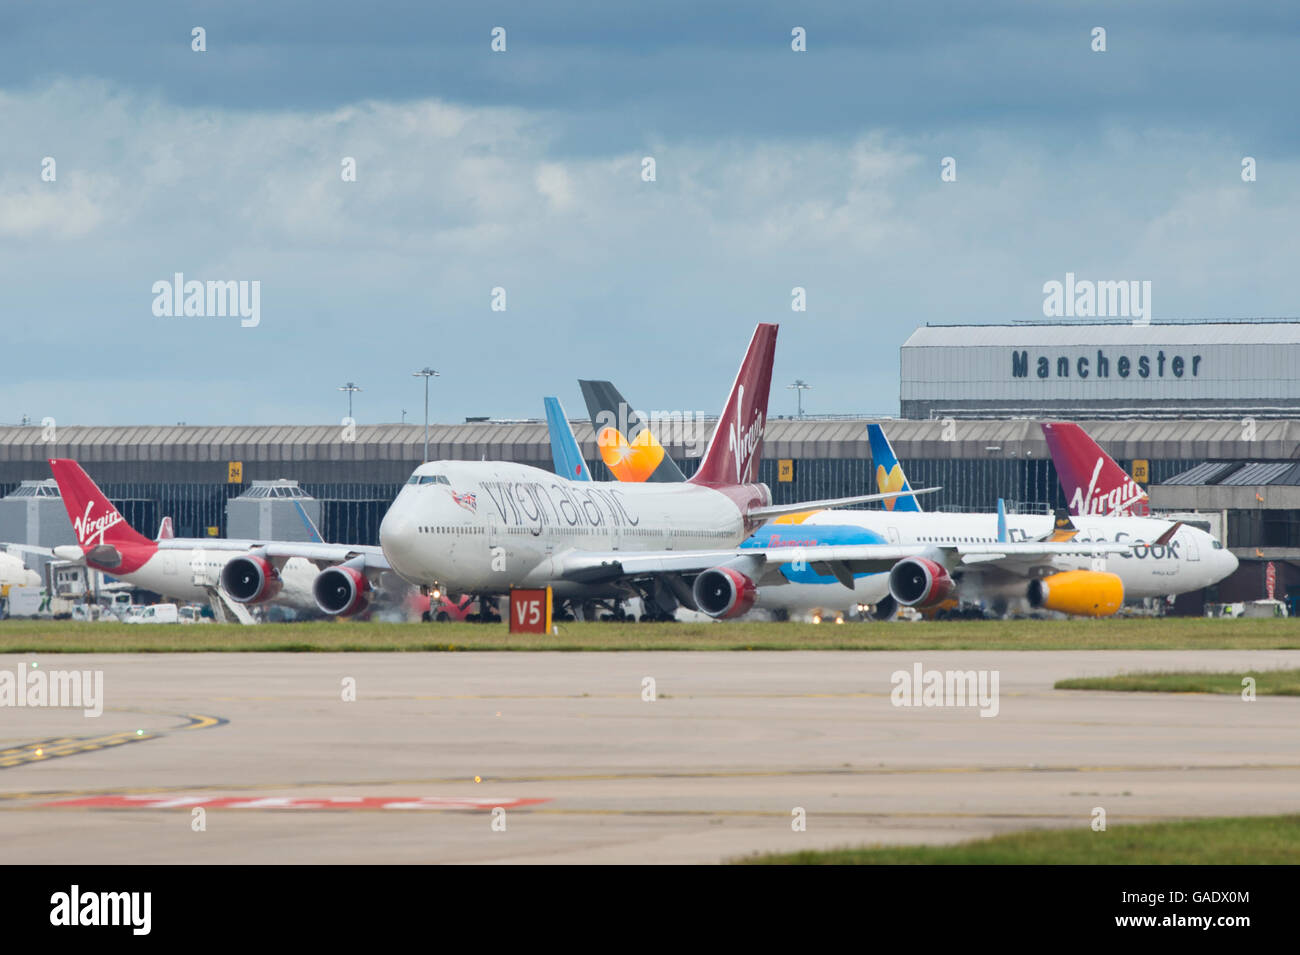 Einen allgemeinen Überblick über Manchester und Landebahn einschließlich einer Virgin Atlantic Boeing 747 im Vordergrund. Stockfoto